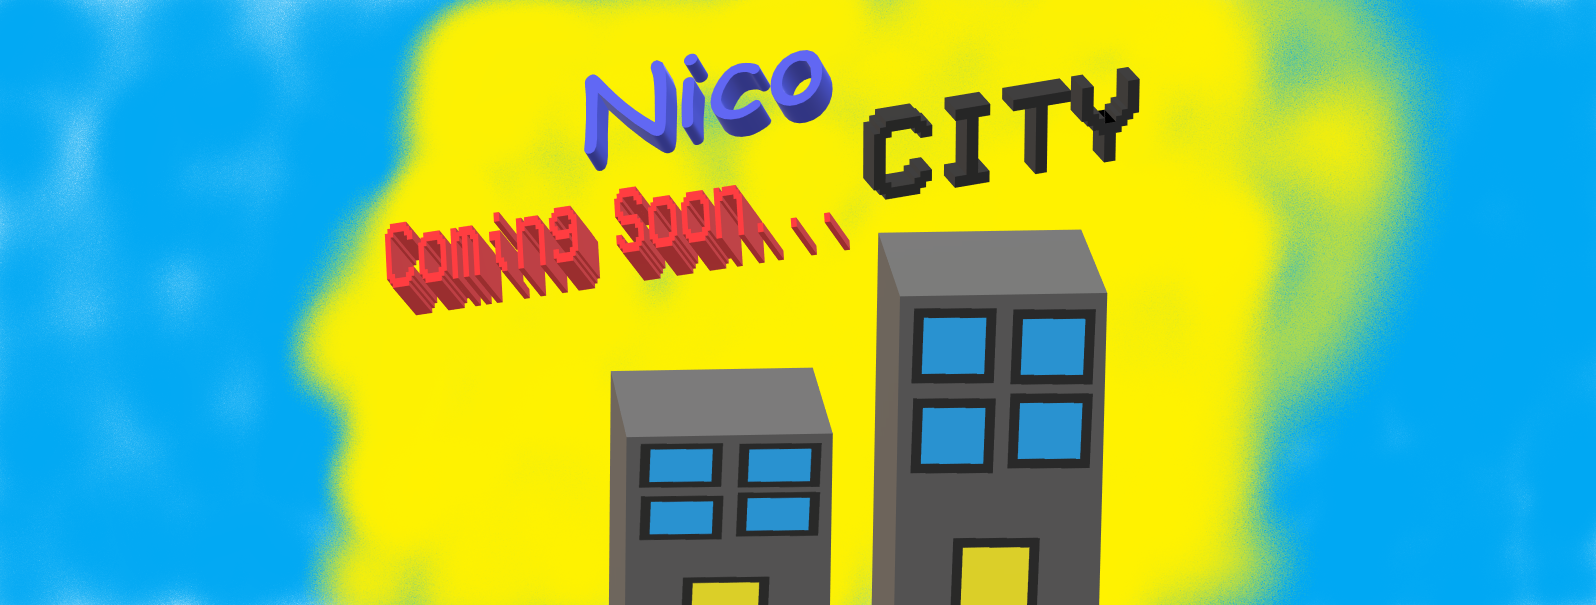 Nico City (Coming Soon)